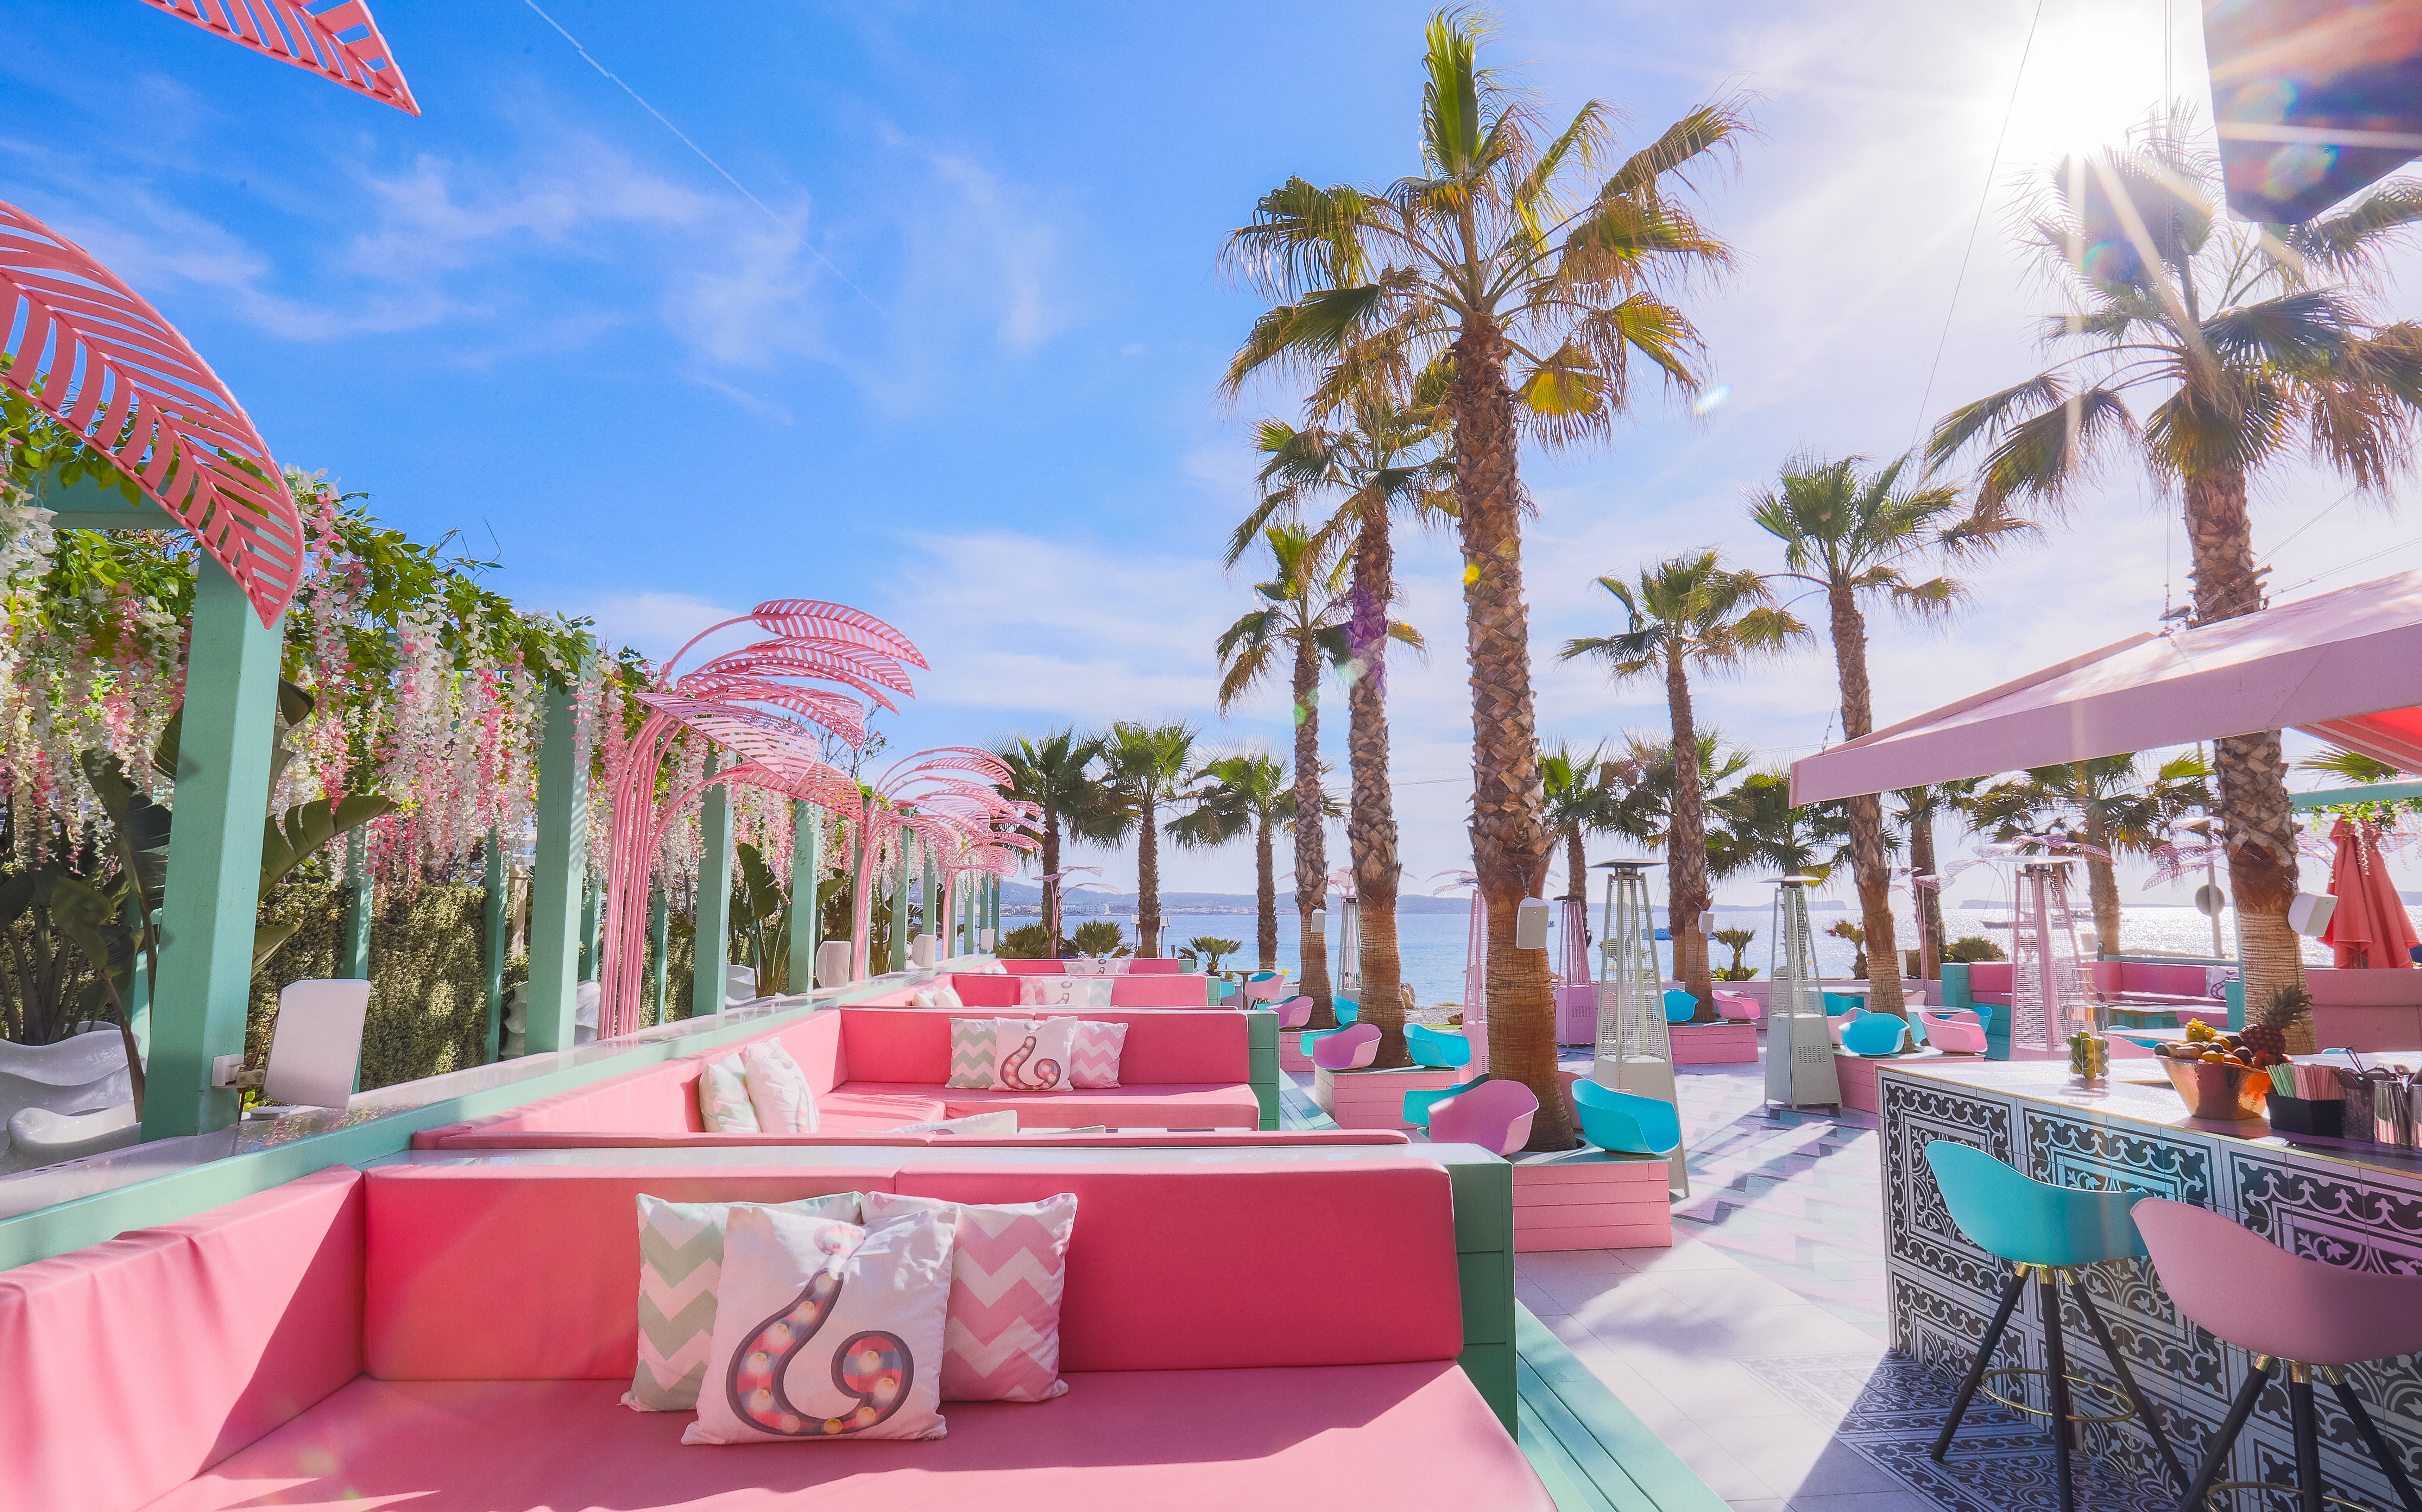 The art-deco hotel where unique pink suites meet a pastel poolside haven